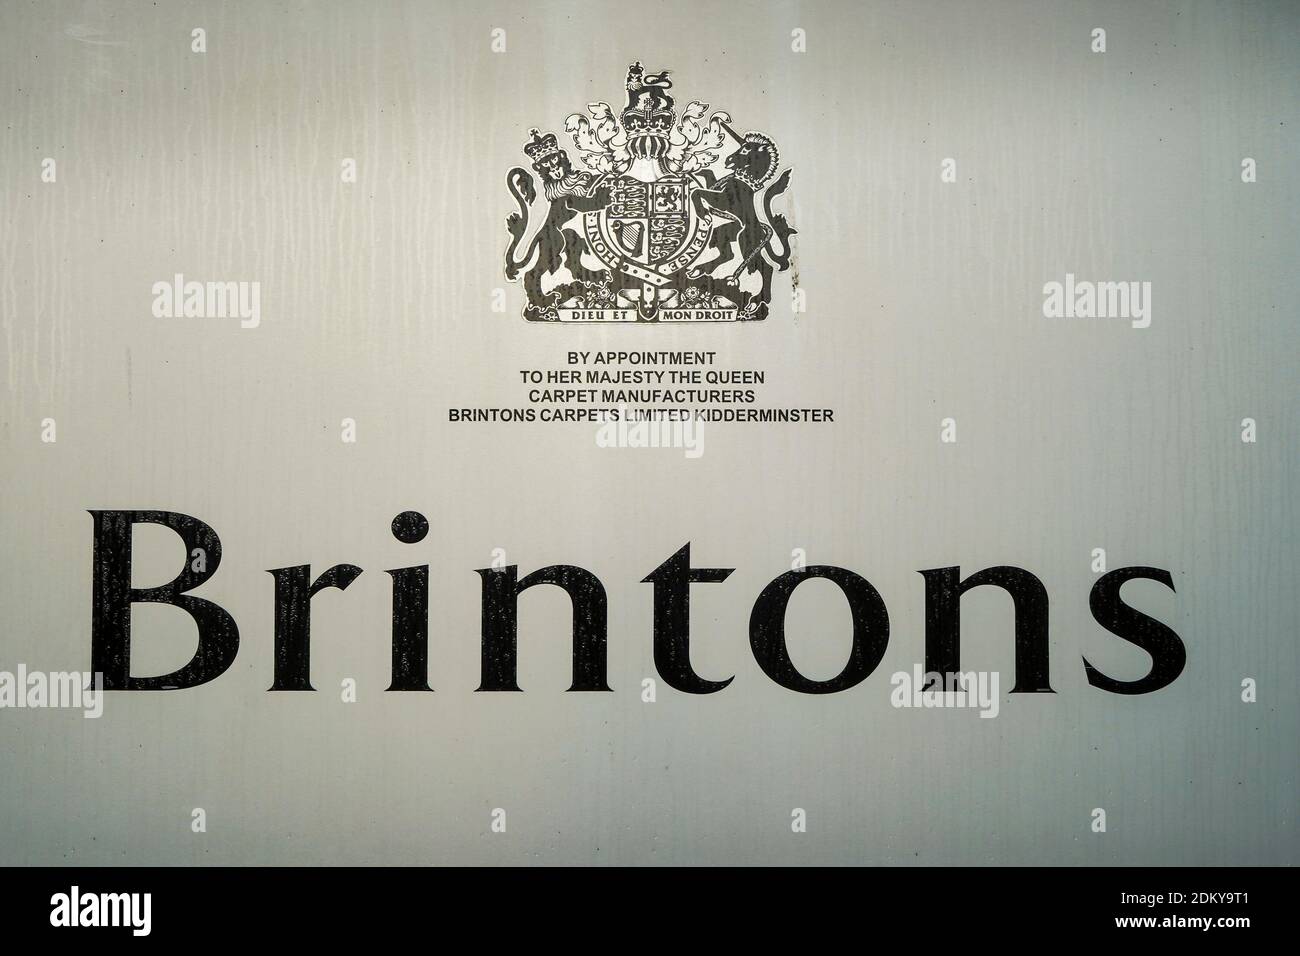 Brintons Carpets, Kidderminster UK. Cartello isolato sull'edificio che mostra il sigillo reale di approvazione / grande sigillo di regno. Produzione inglese di tappeti. Foto Stock